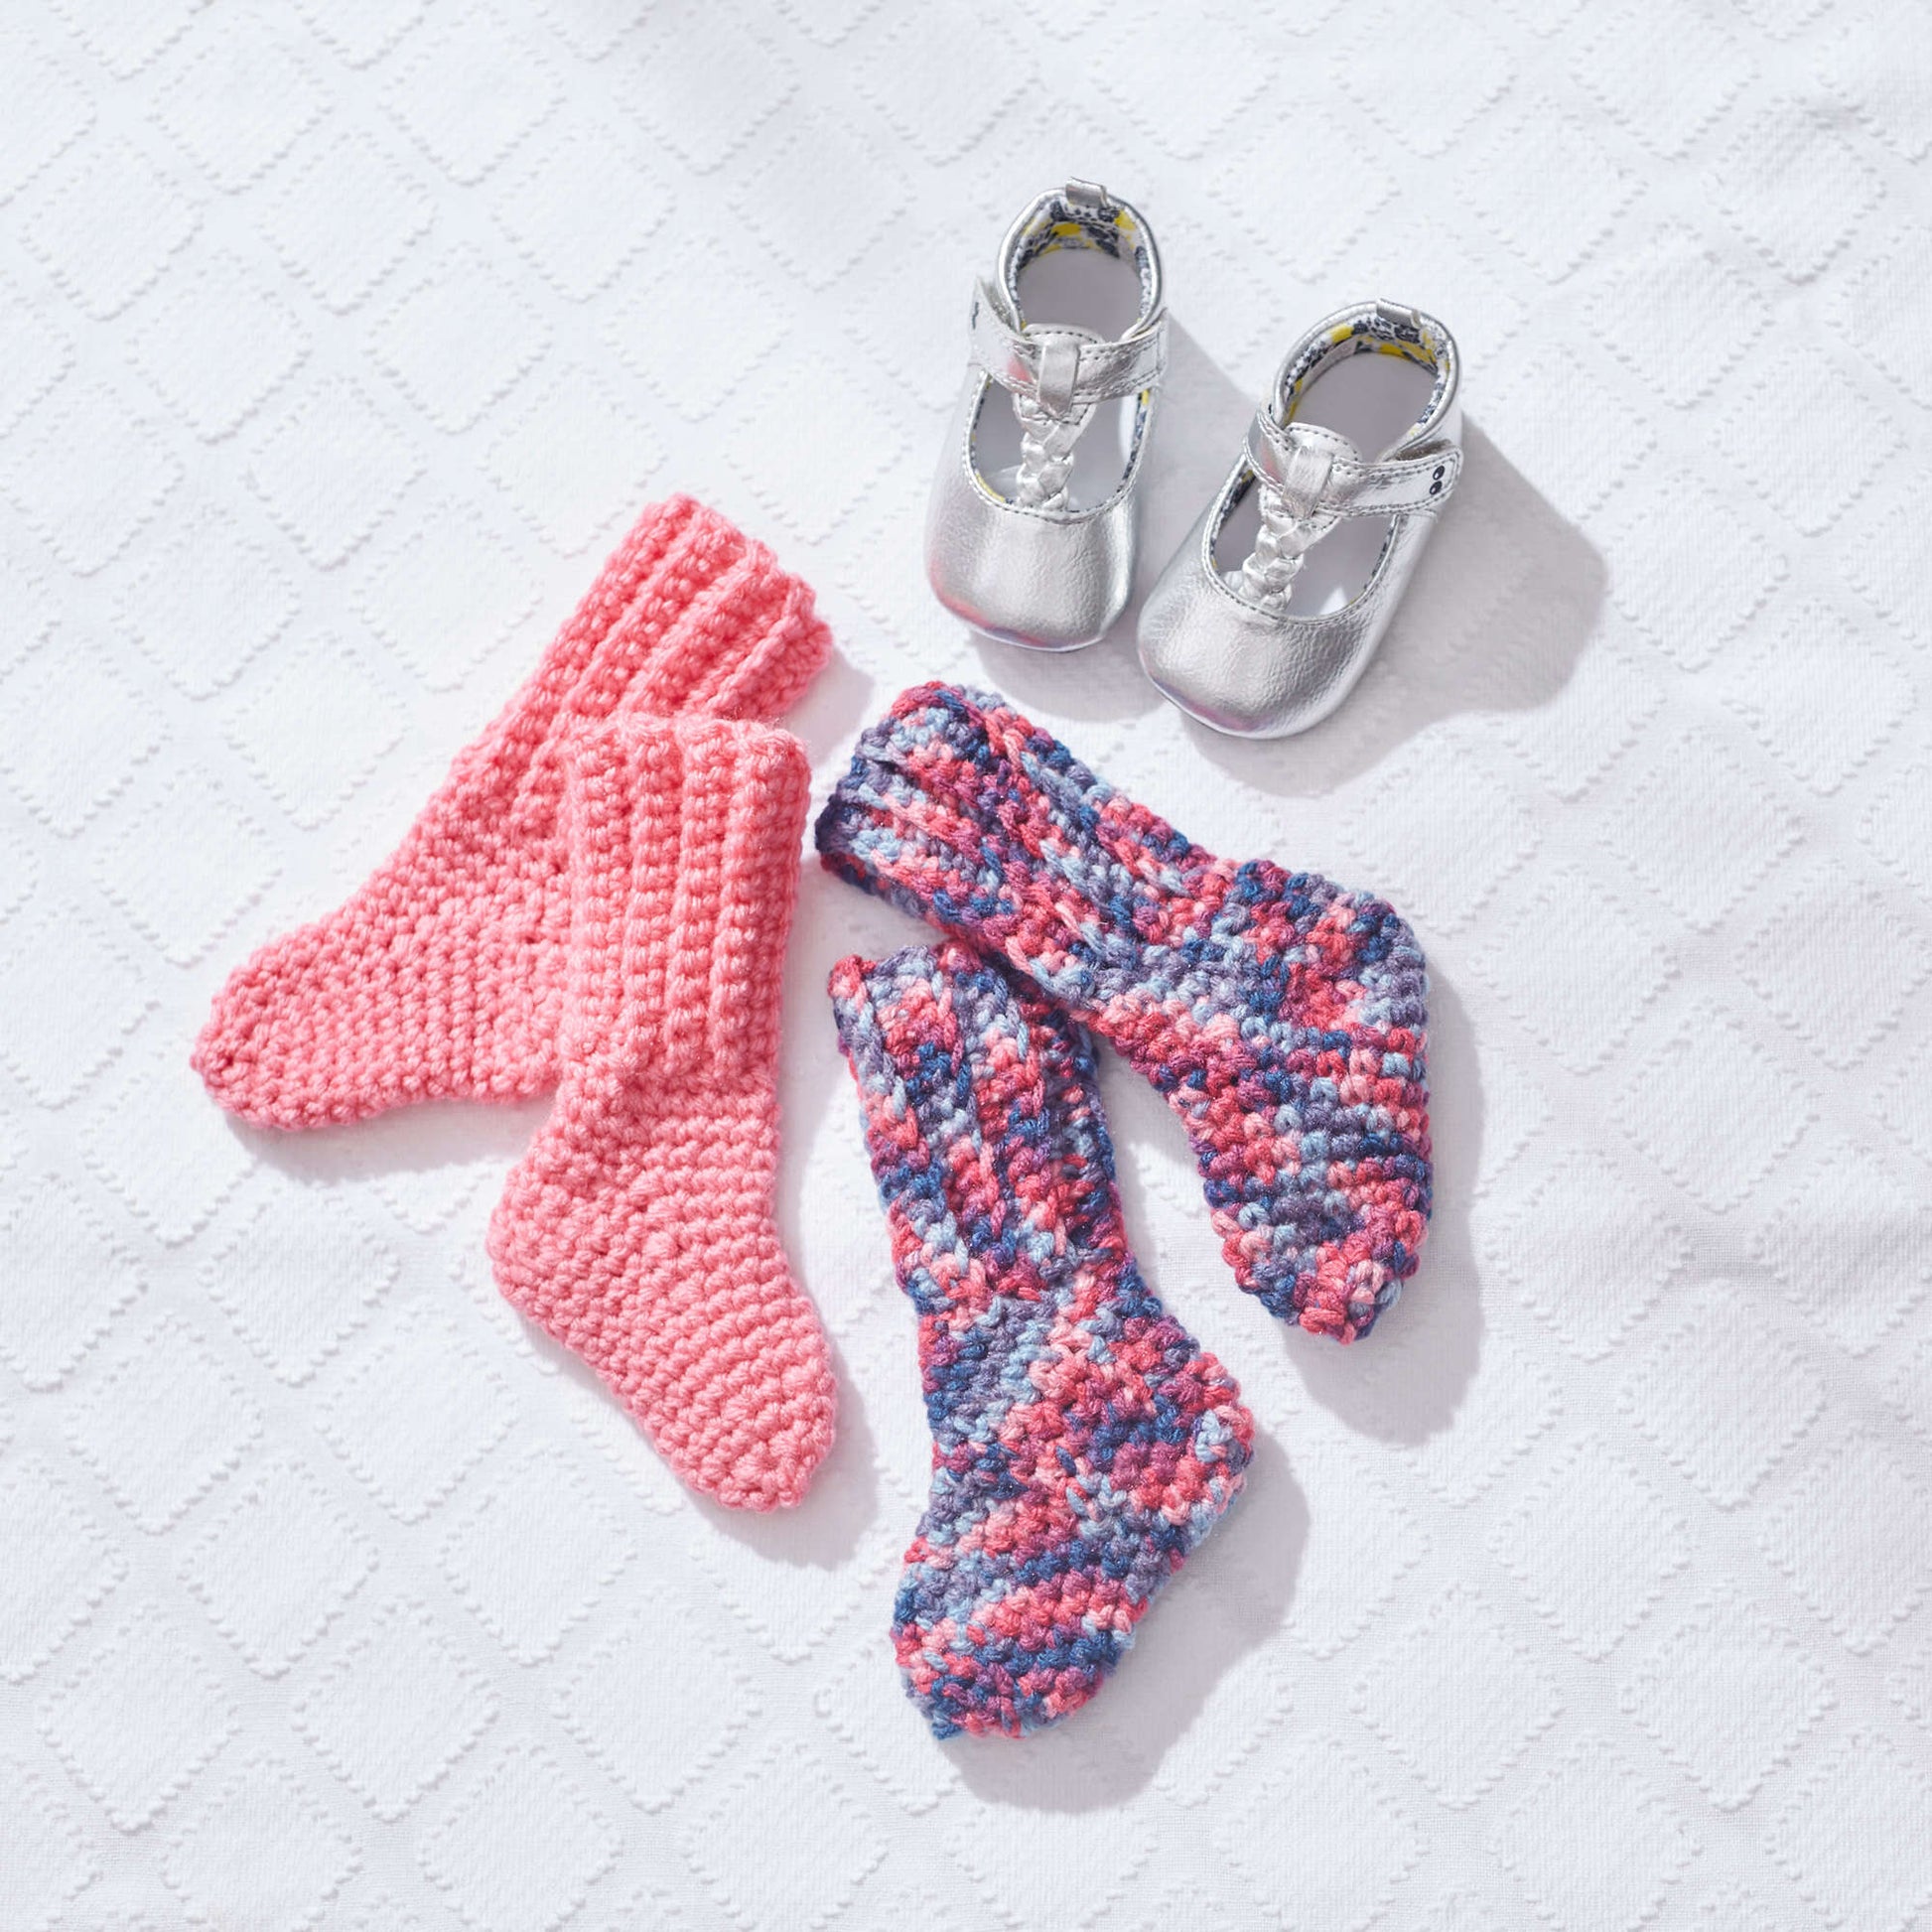 Free Red Heart Crochet Baby Socks Pattern